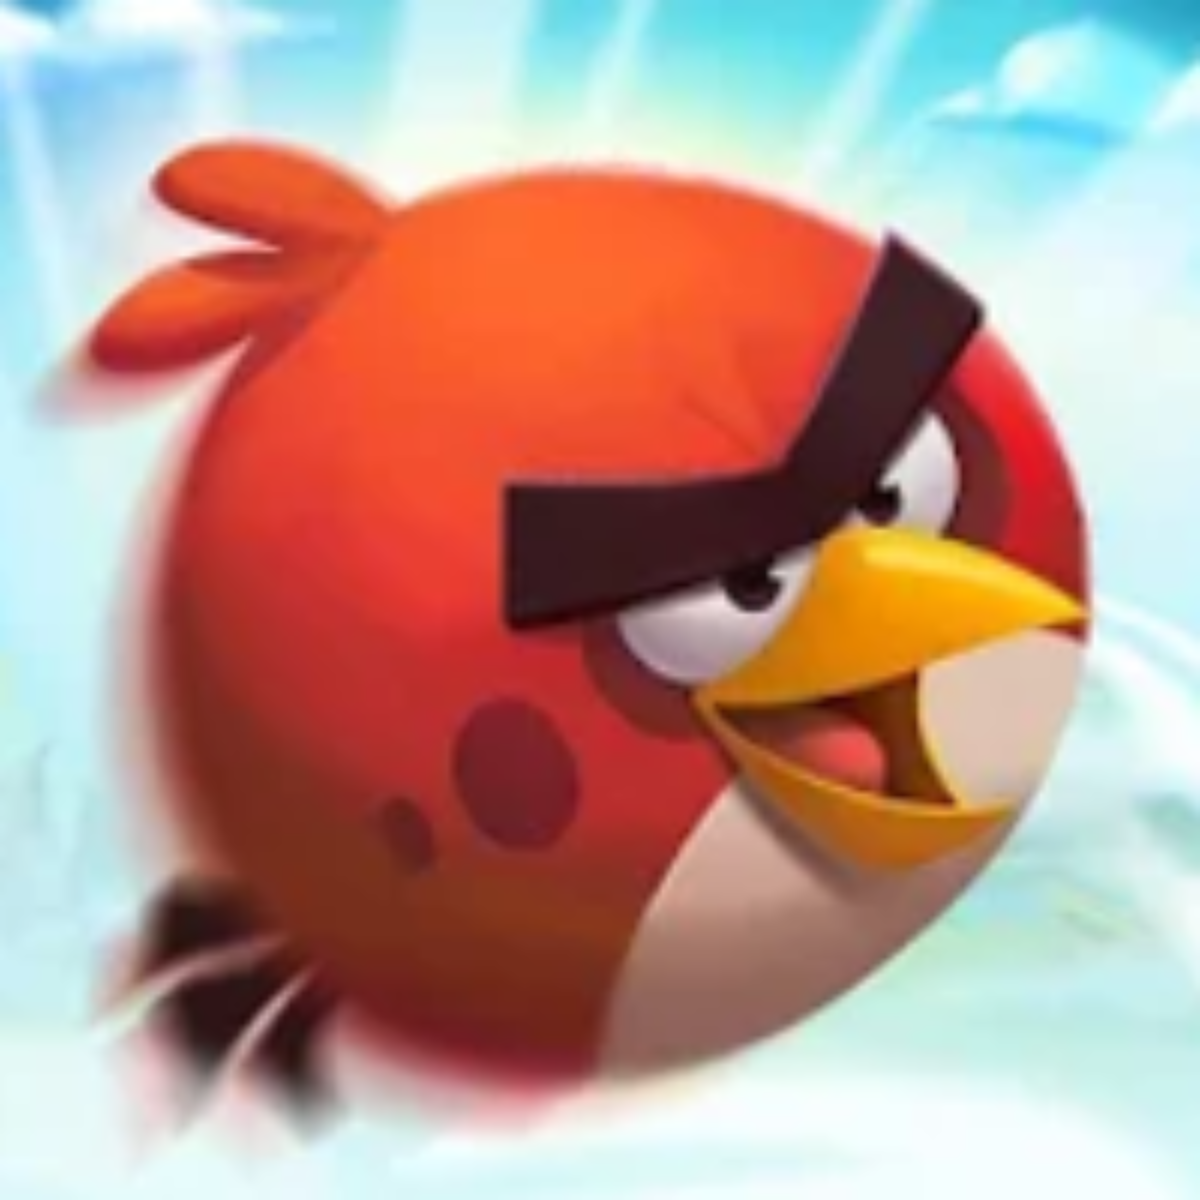 Angry Birds Transformers v2.15.0 Apk Mod [Dinheiro Infinito]